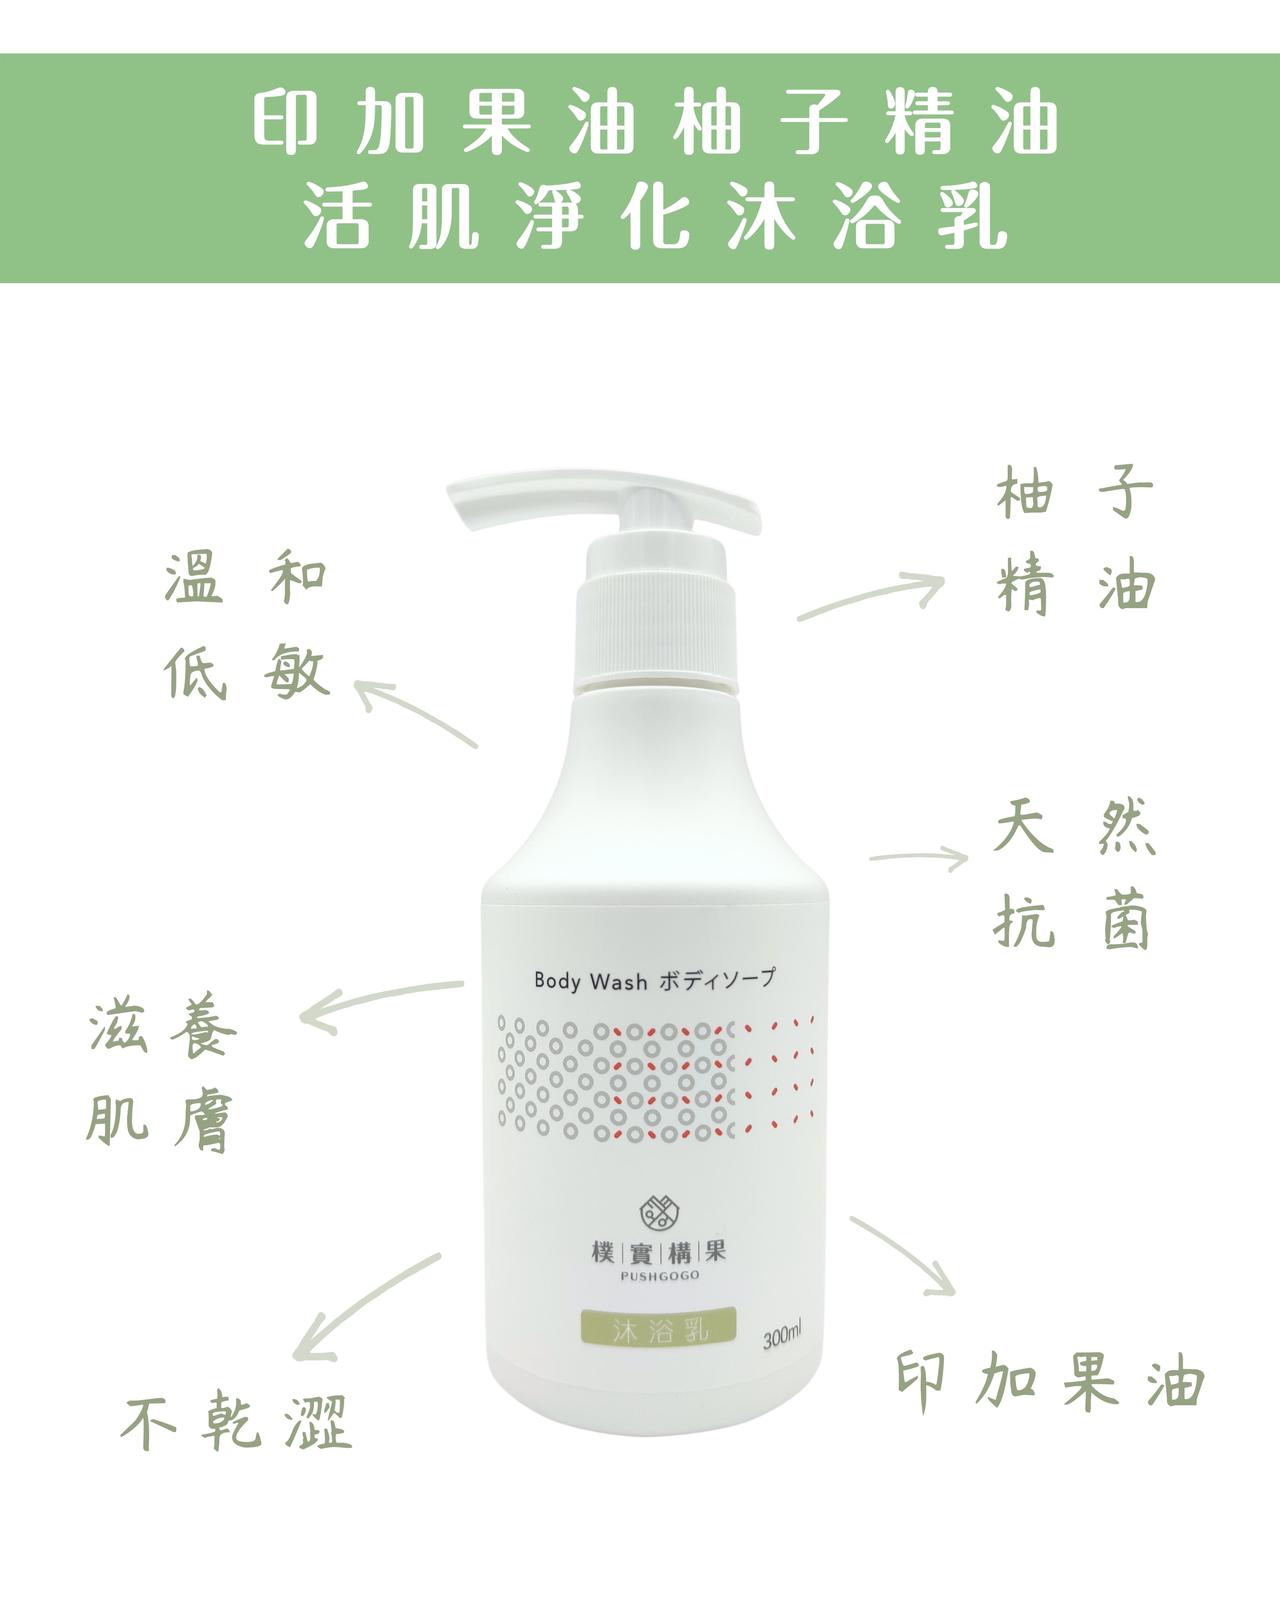 (單瓶含運組)【樸實構果】印加果油柚子精油活肌淨化沐浴乳(300ml/瓶)